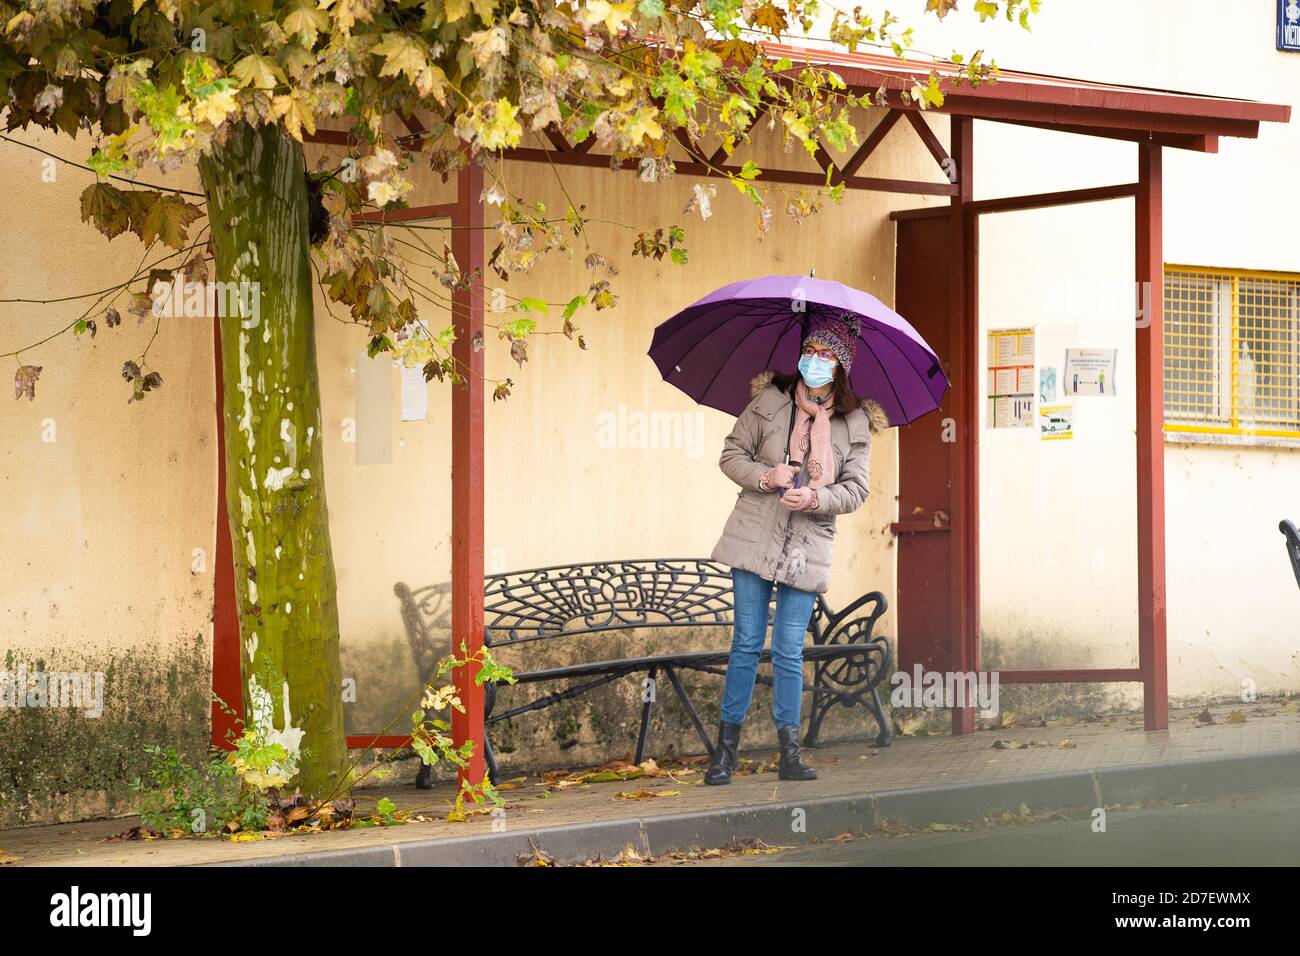 Frau mit Schirm an der Bushaltestelle Stockfoto